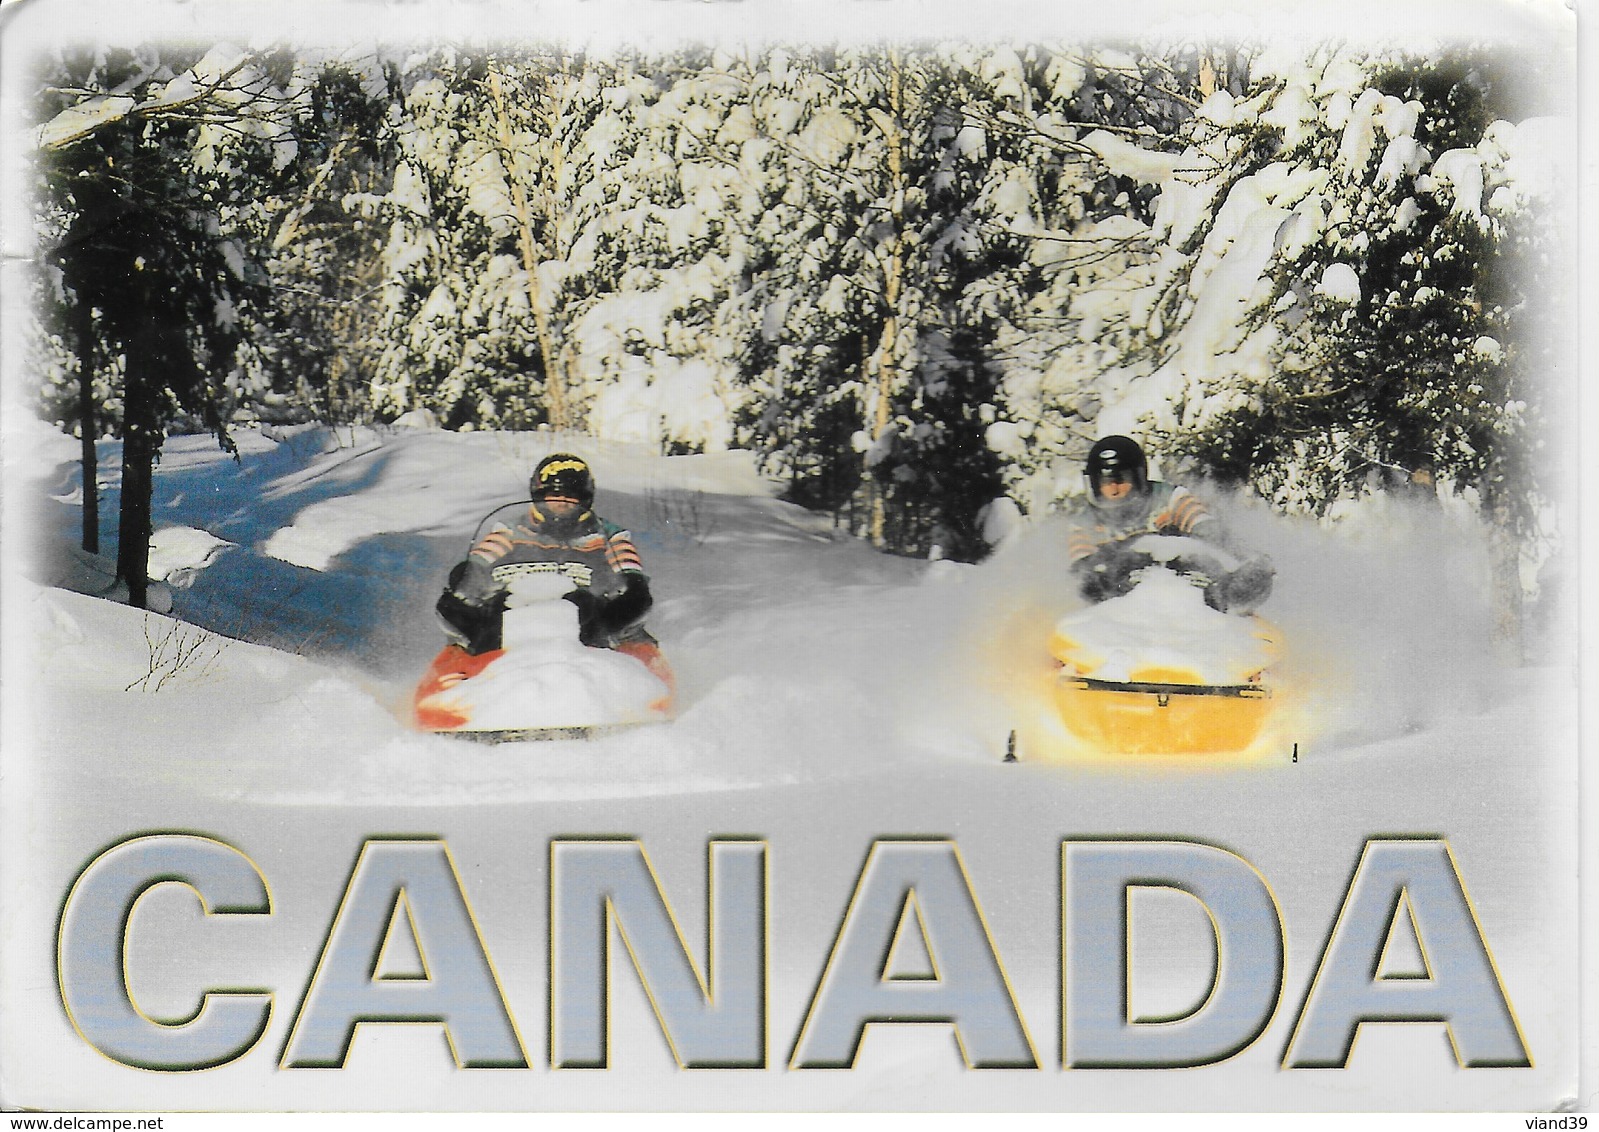 Canada - Au Pays De La Moto Neige Grande Nature - Cartes Modernes